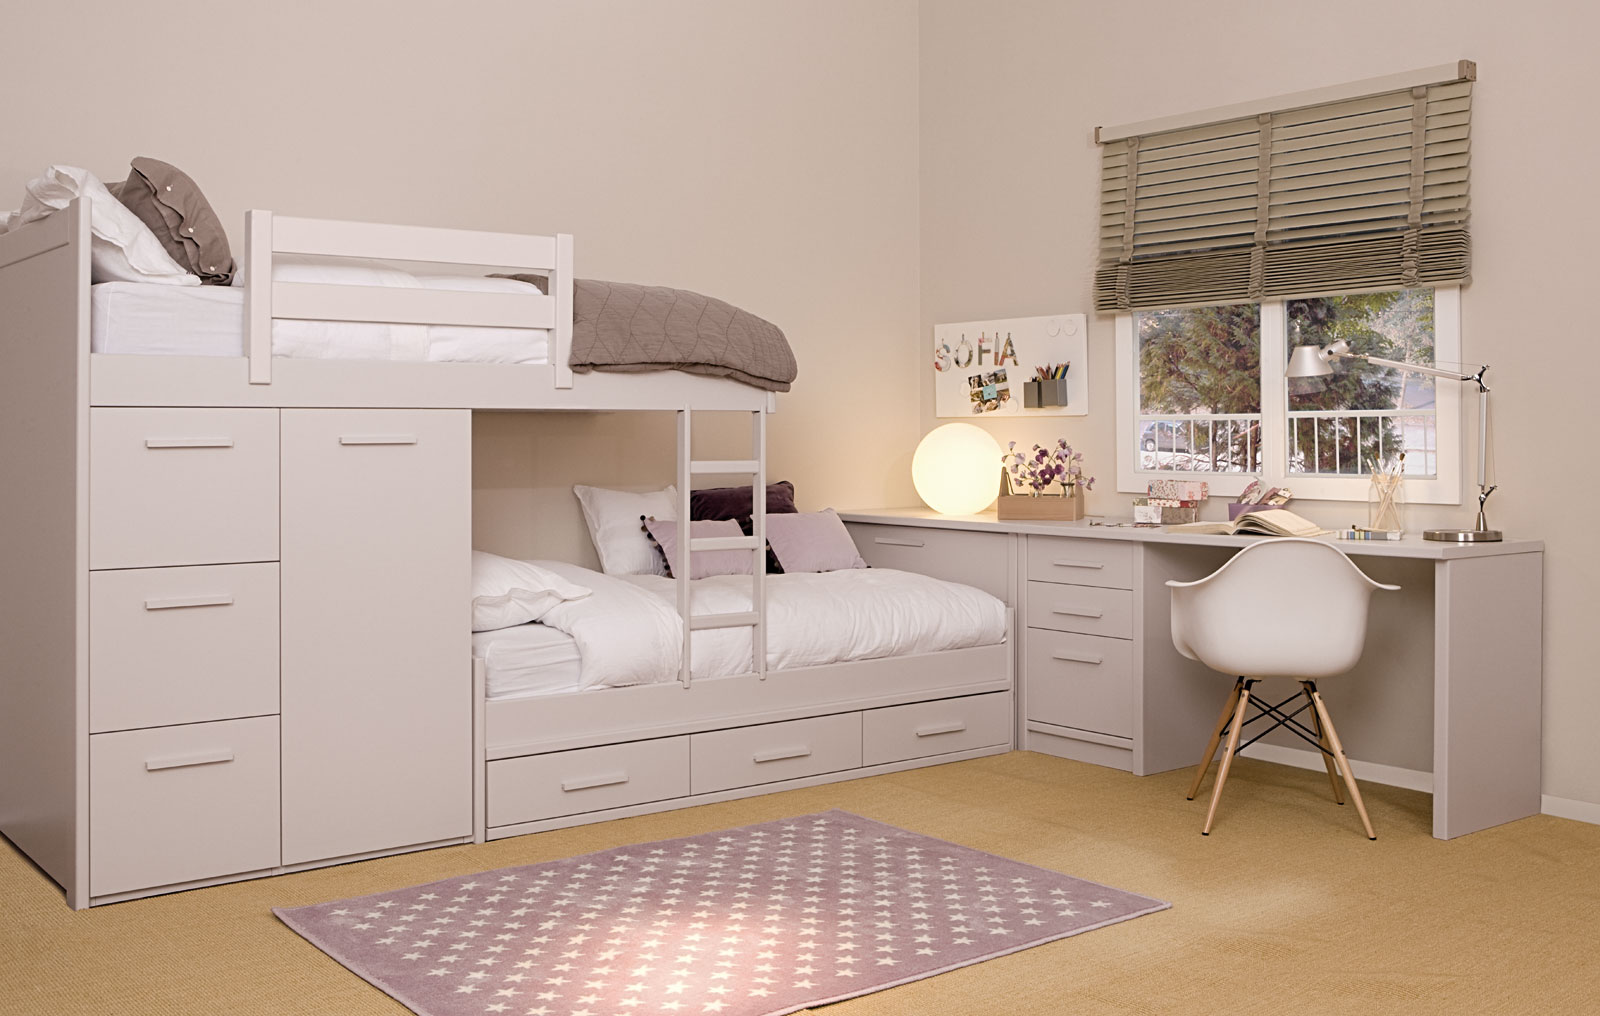 10 Dormitorios juveniles modernos | Ideas para decorar, diseñar y